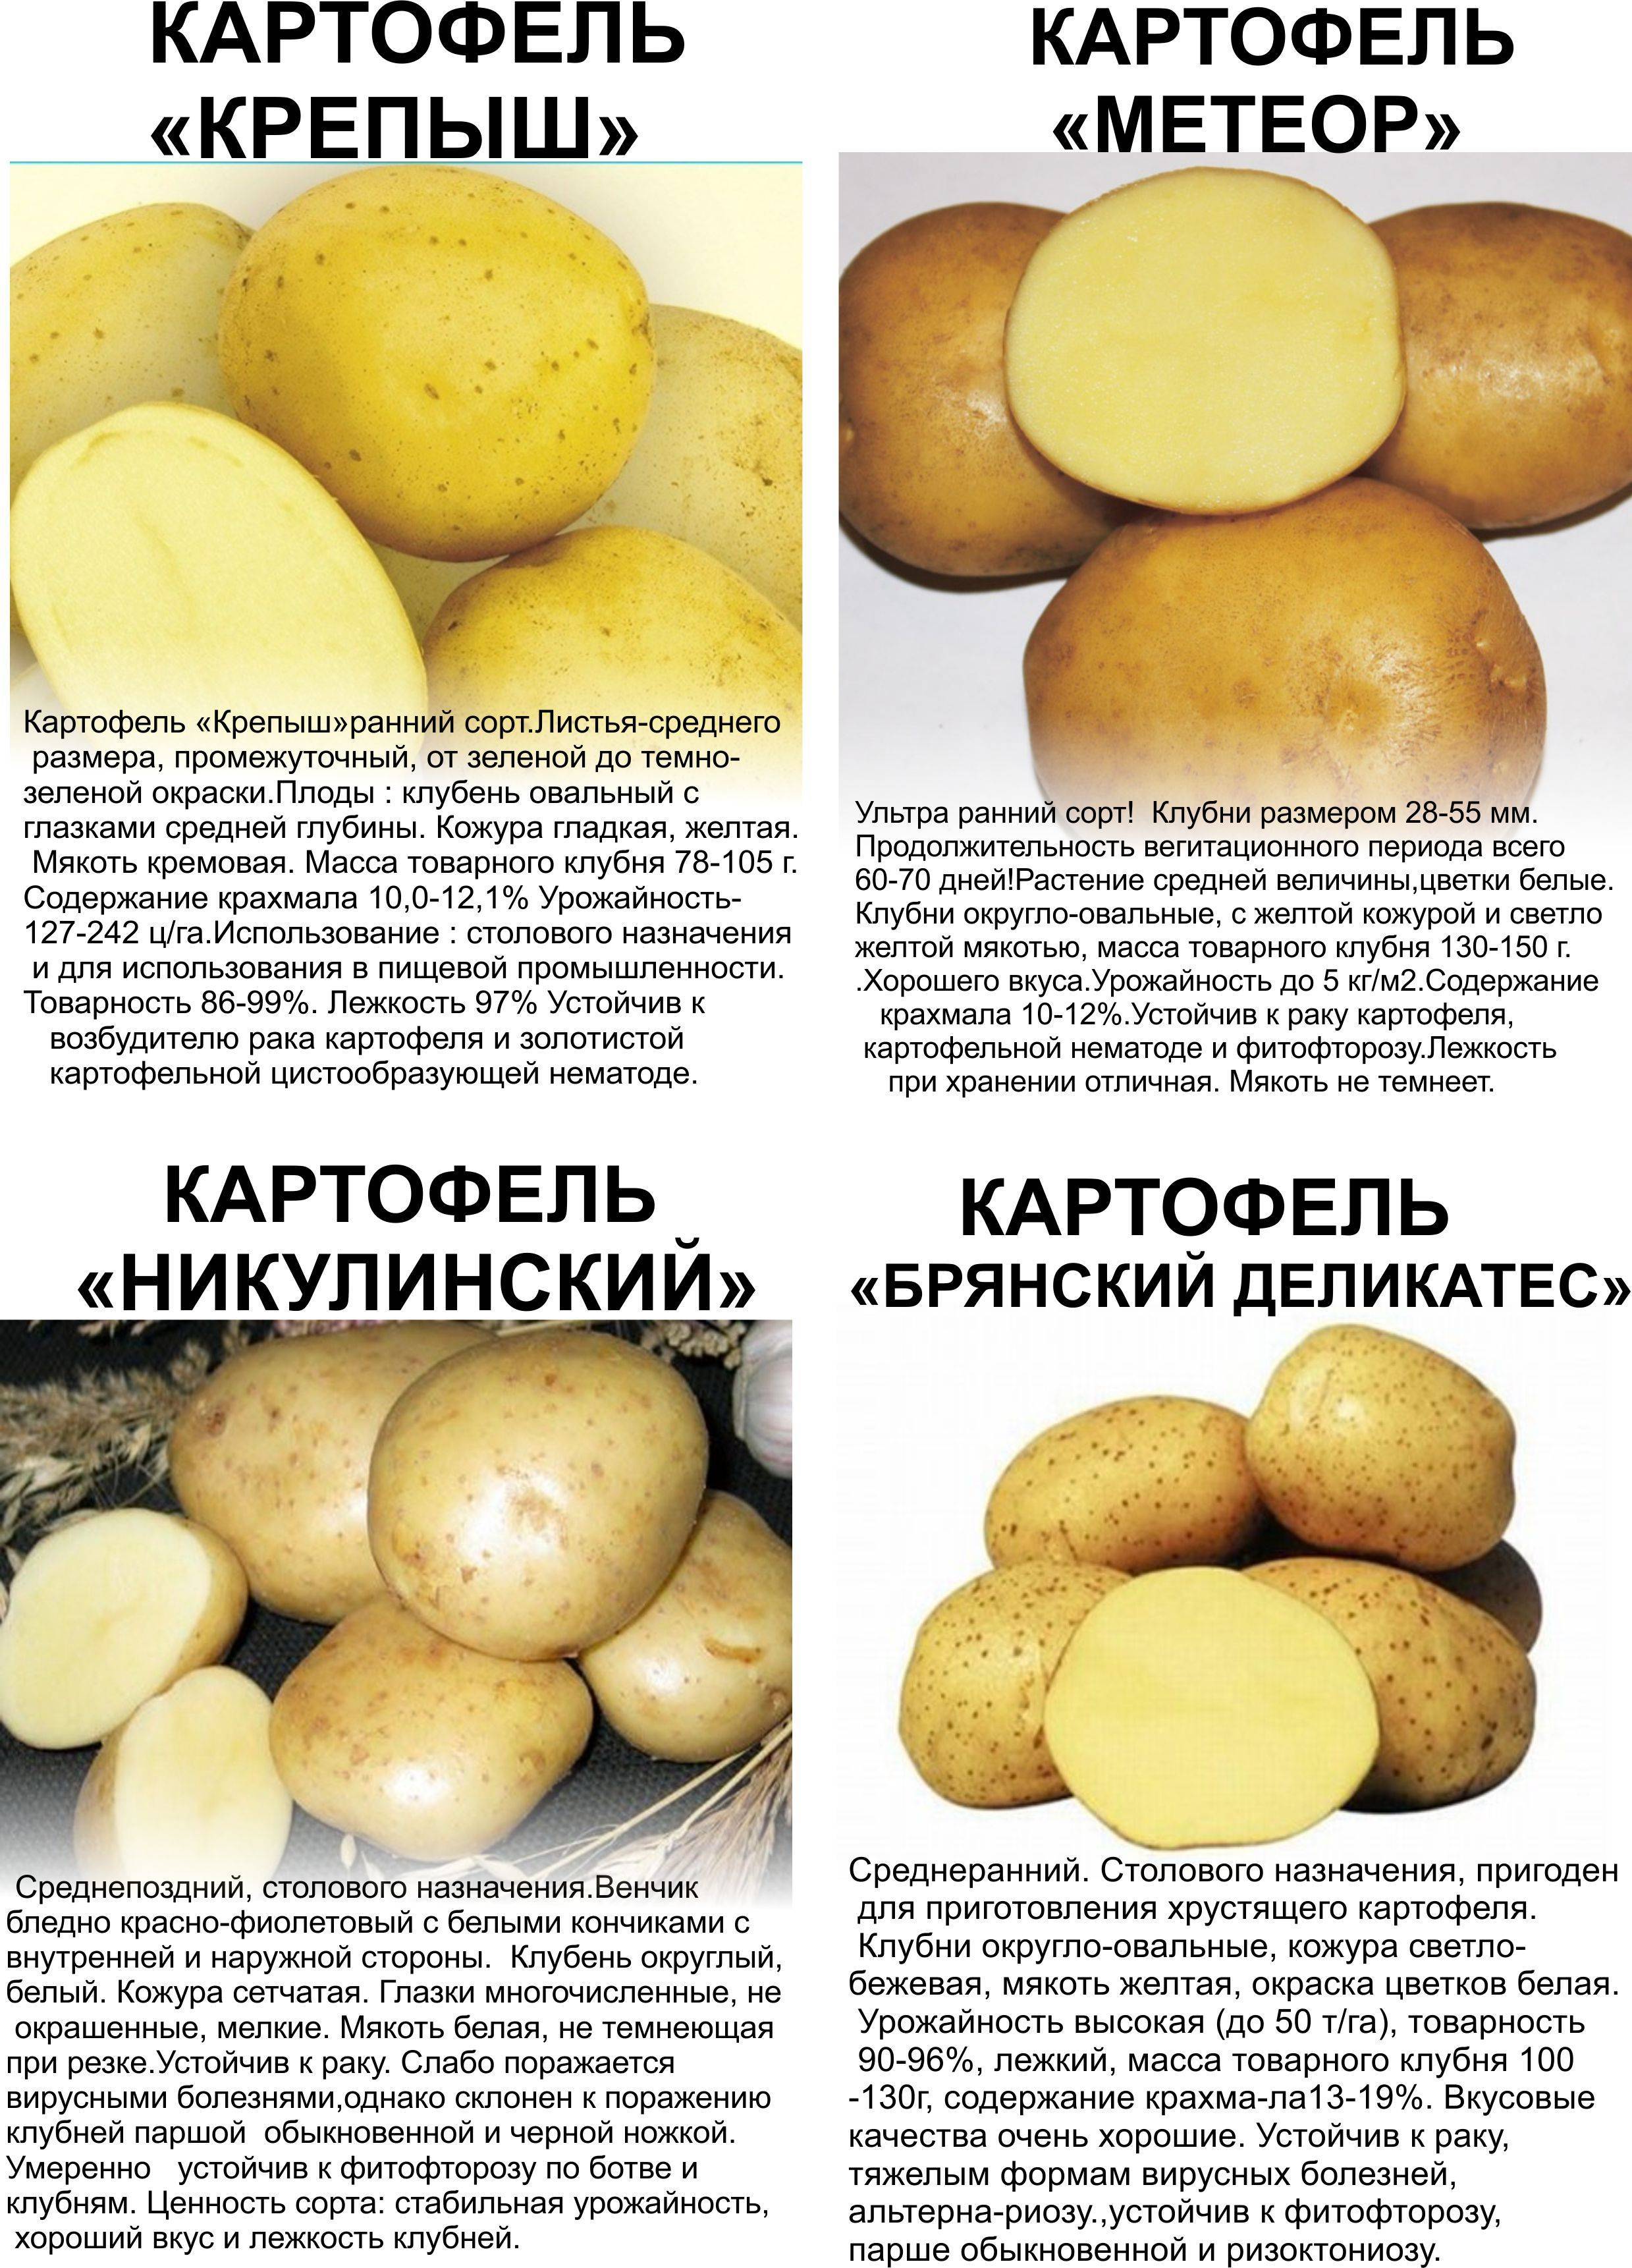 Ранний столовый сорт картофеля «палац» от белорусских селекционеров